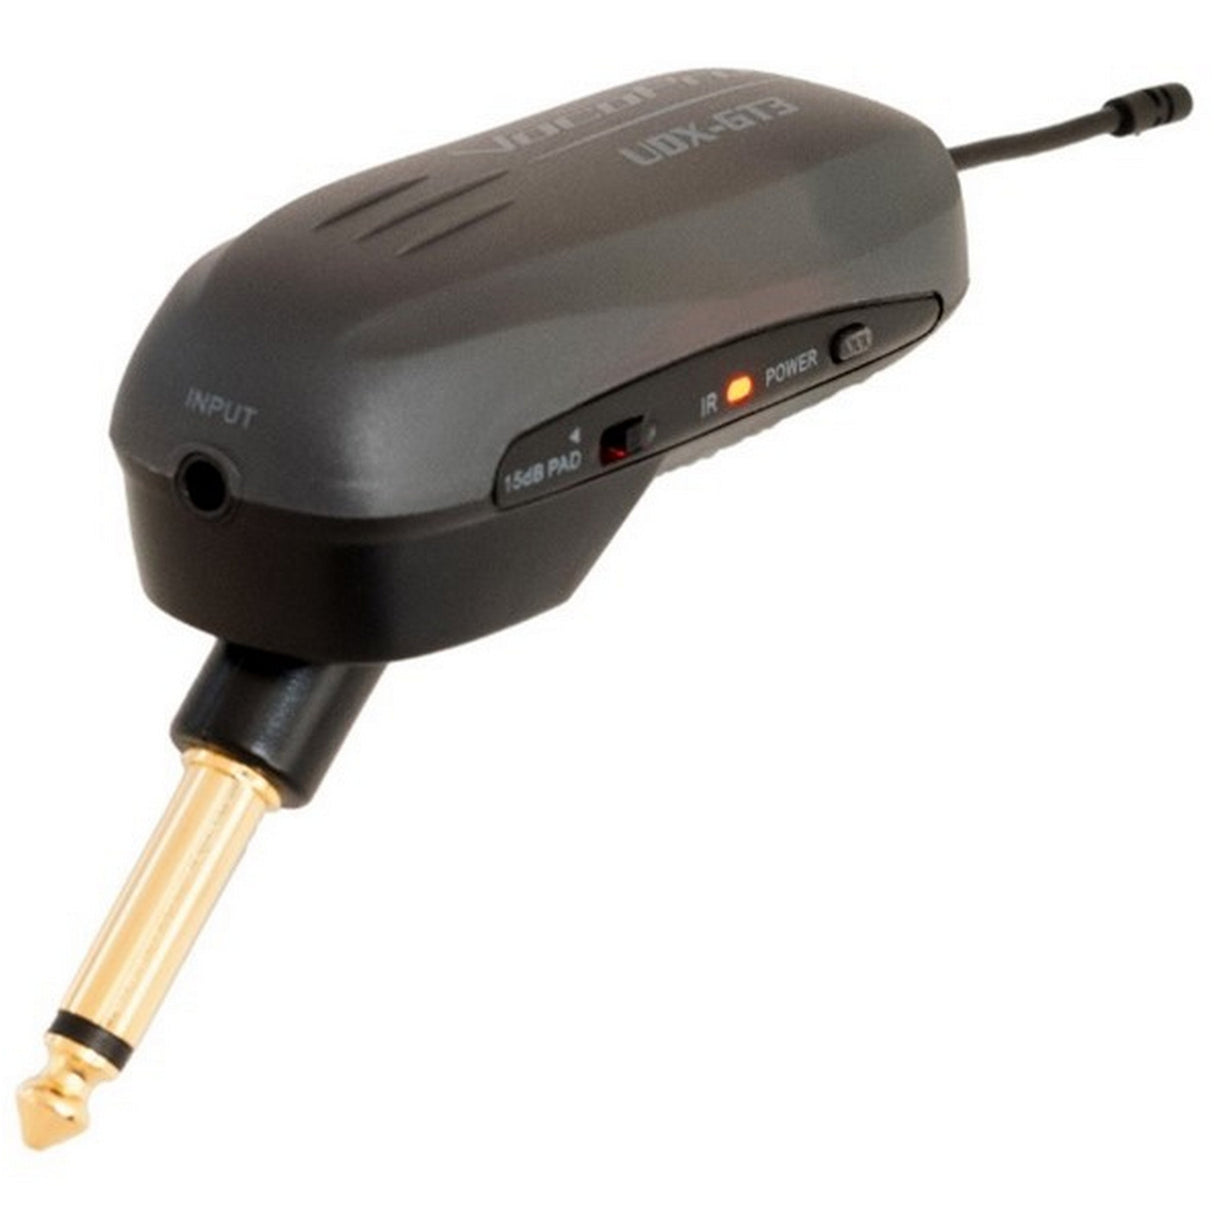 VocoPro SingerSongwriter Digital UHF PLL Wireless System, 902.00MHz to 928.00 MHz